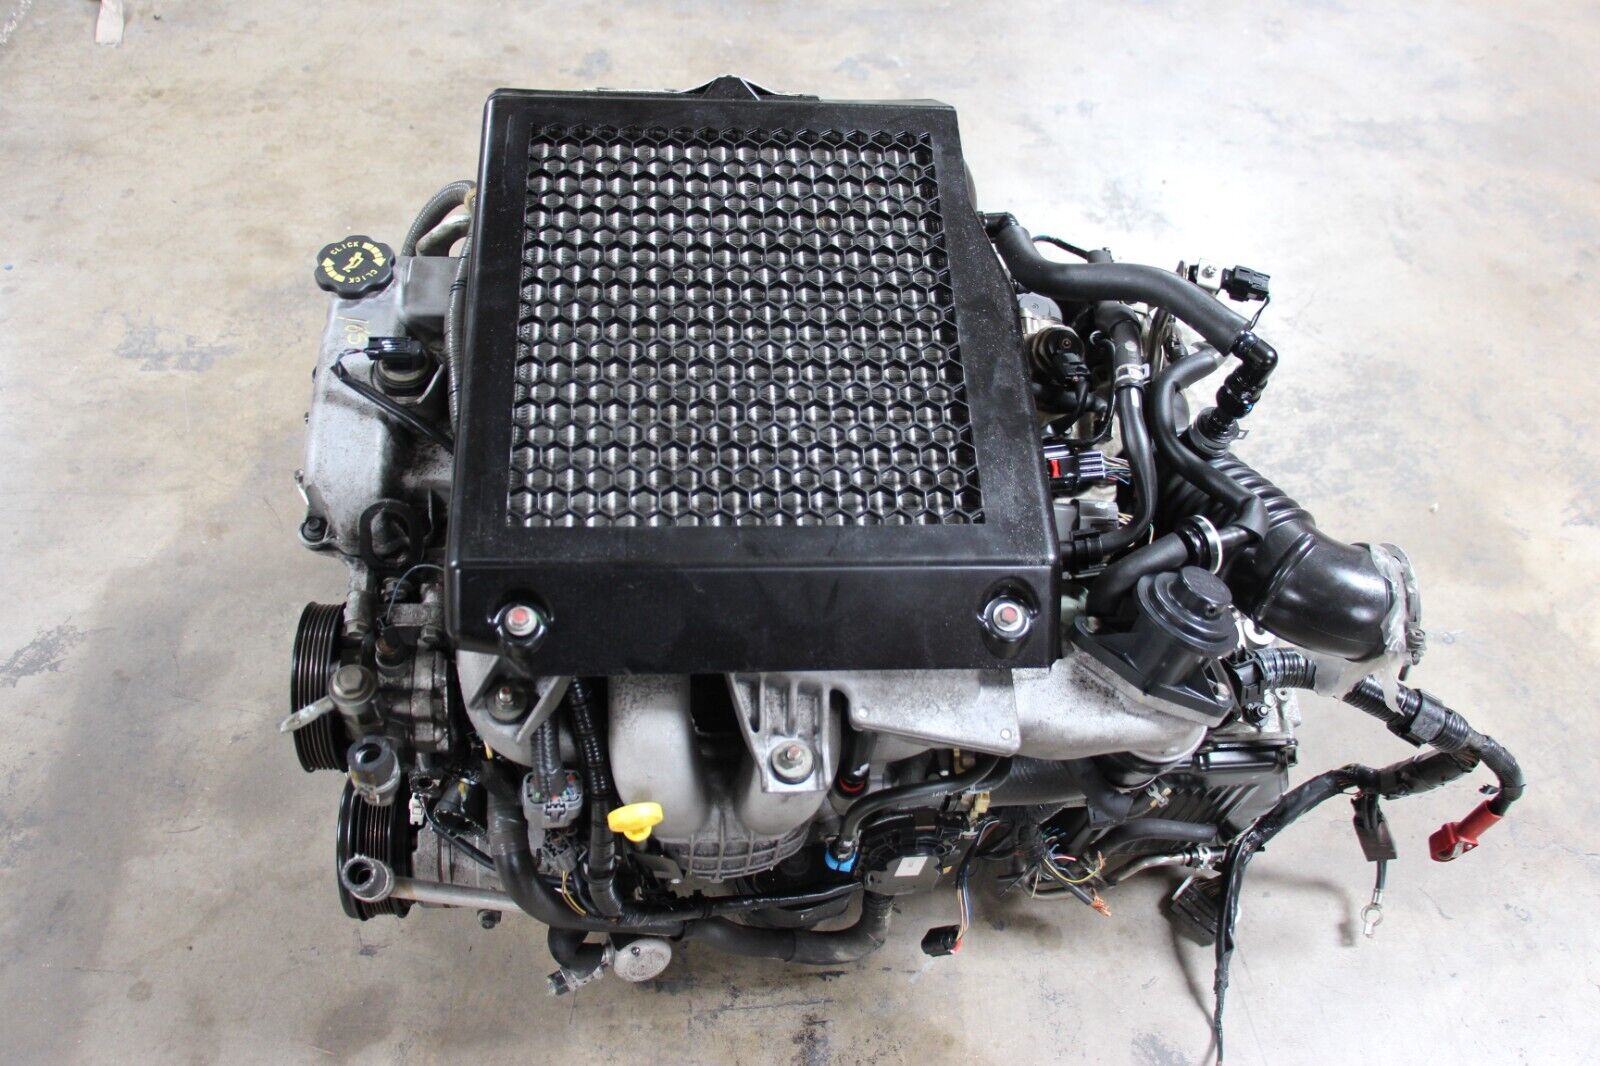 JDM L3 Mazda Speed 3 CX-7 2.3L Turbo VDT engine 2007 - 2012